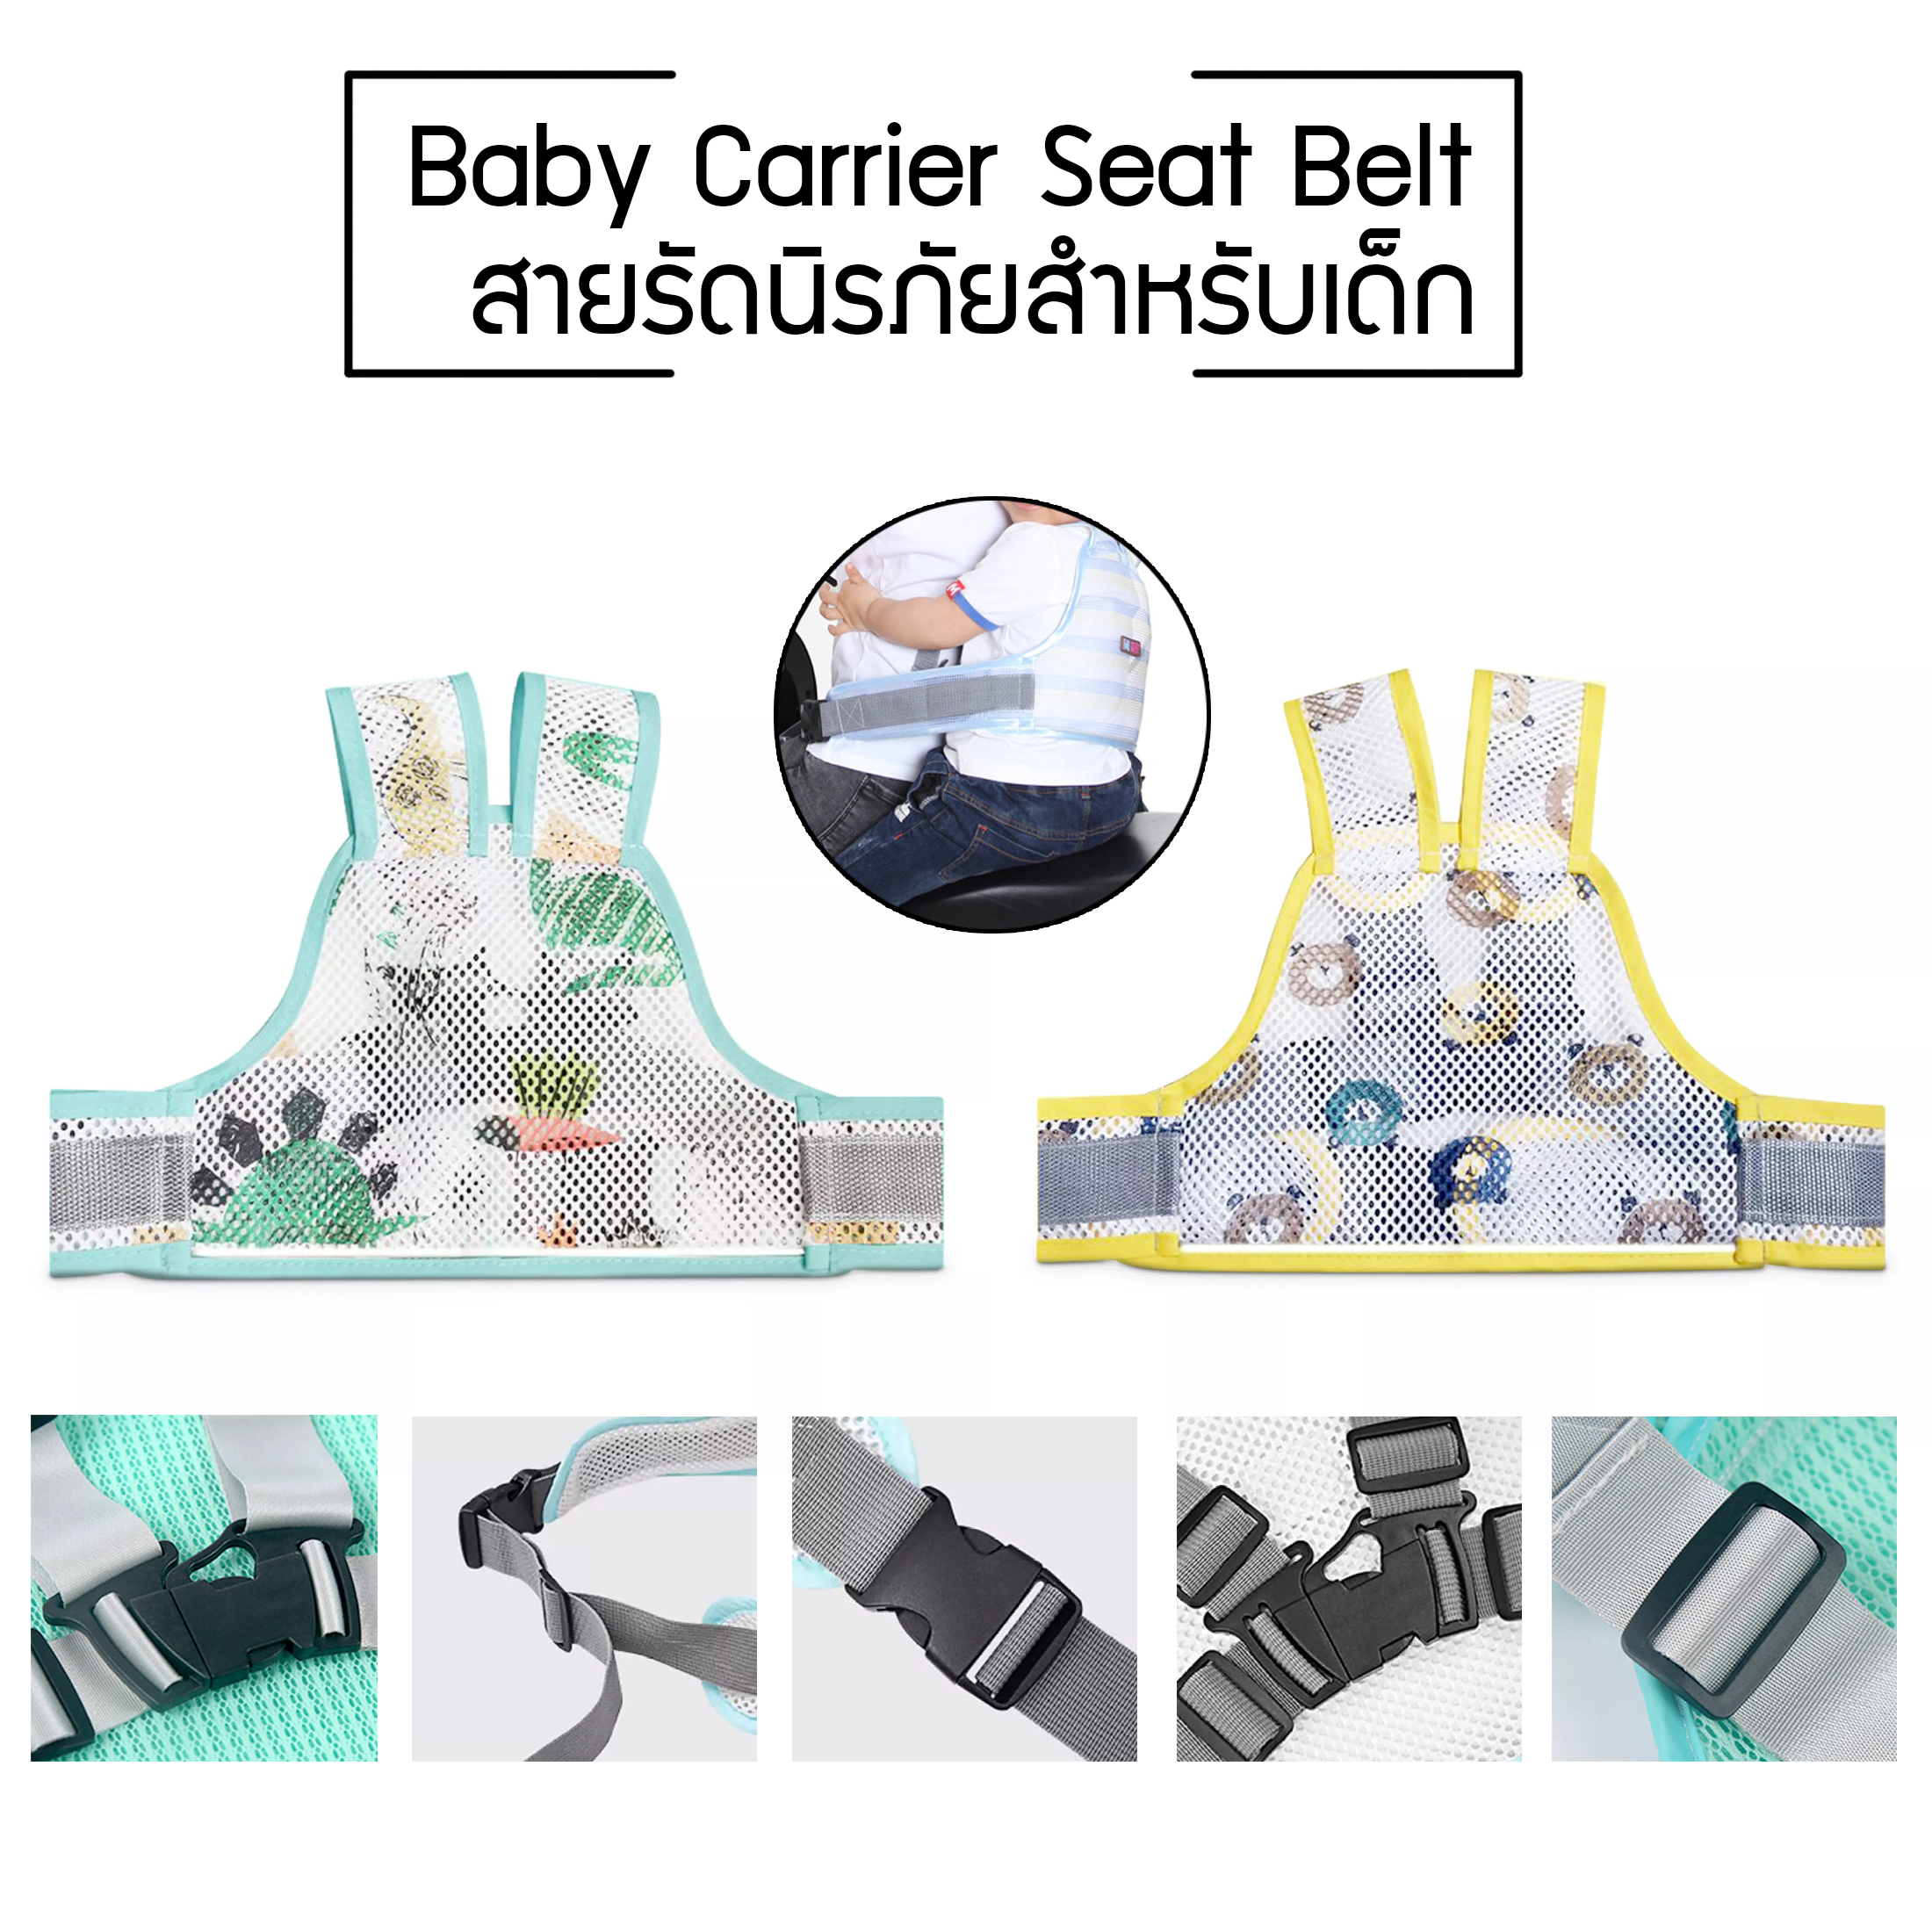 สายรัดนิรภัยเด็ก สำหรับเด็ก เข็มขัดนิรภัยเด็ก สายรัดเอวกันเด็กตก ป้องกันเด็กตกรถ เพื่อความปลอดภัย Baby Carrier Seat Belt ร้านLightz